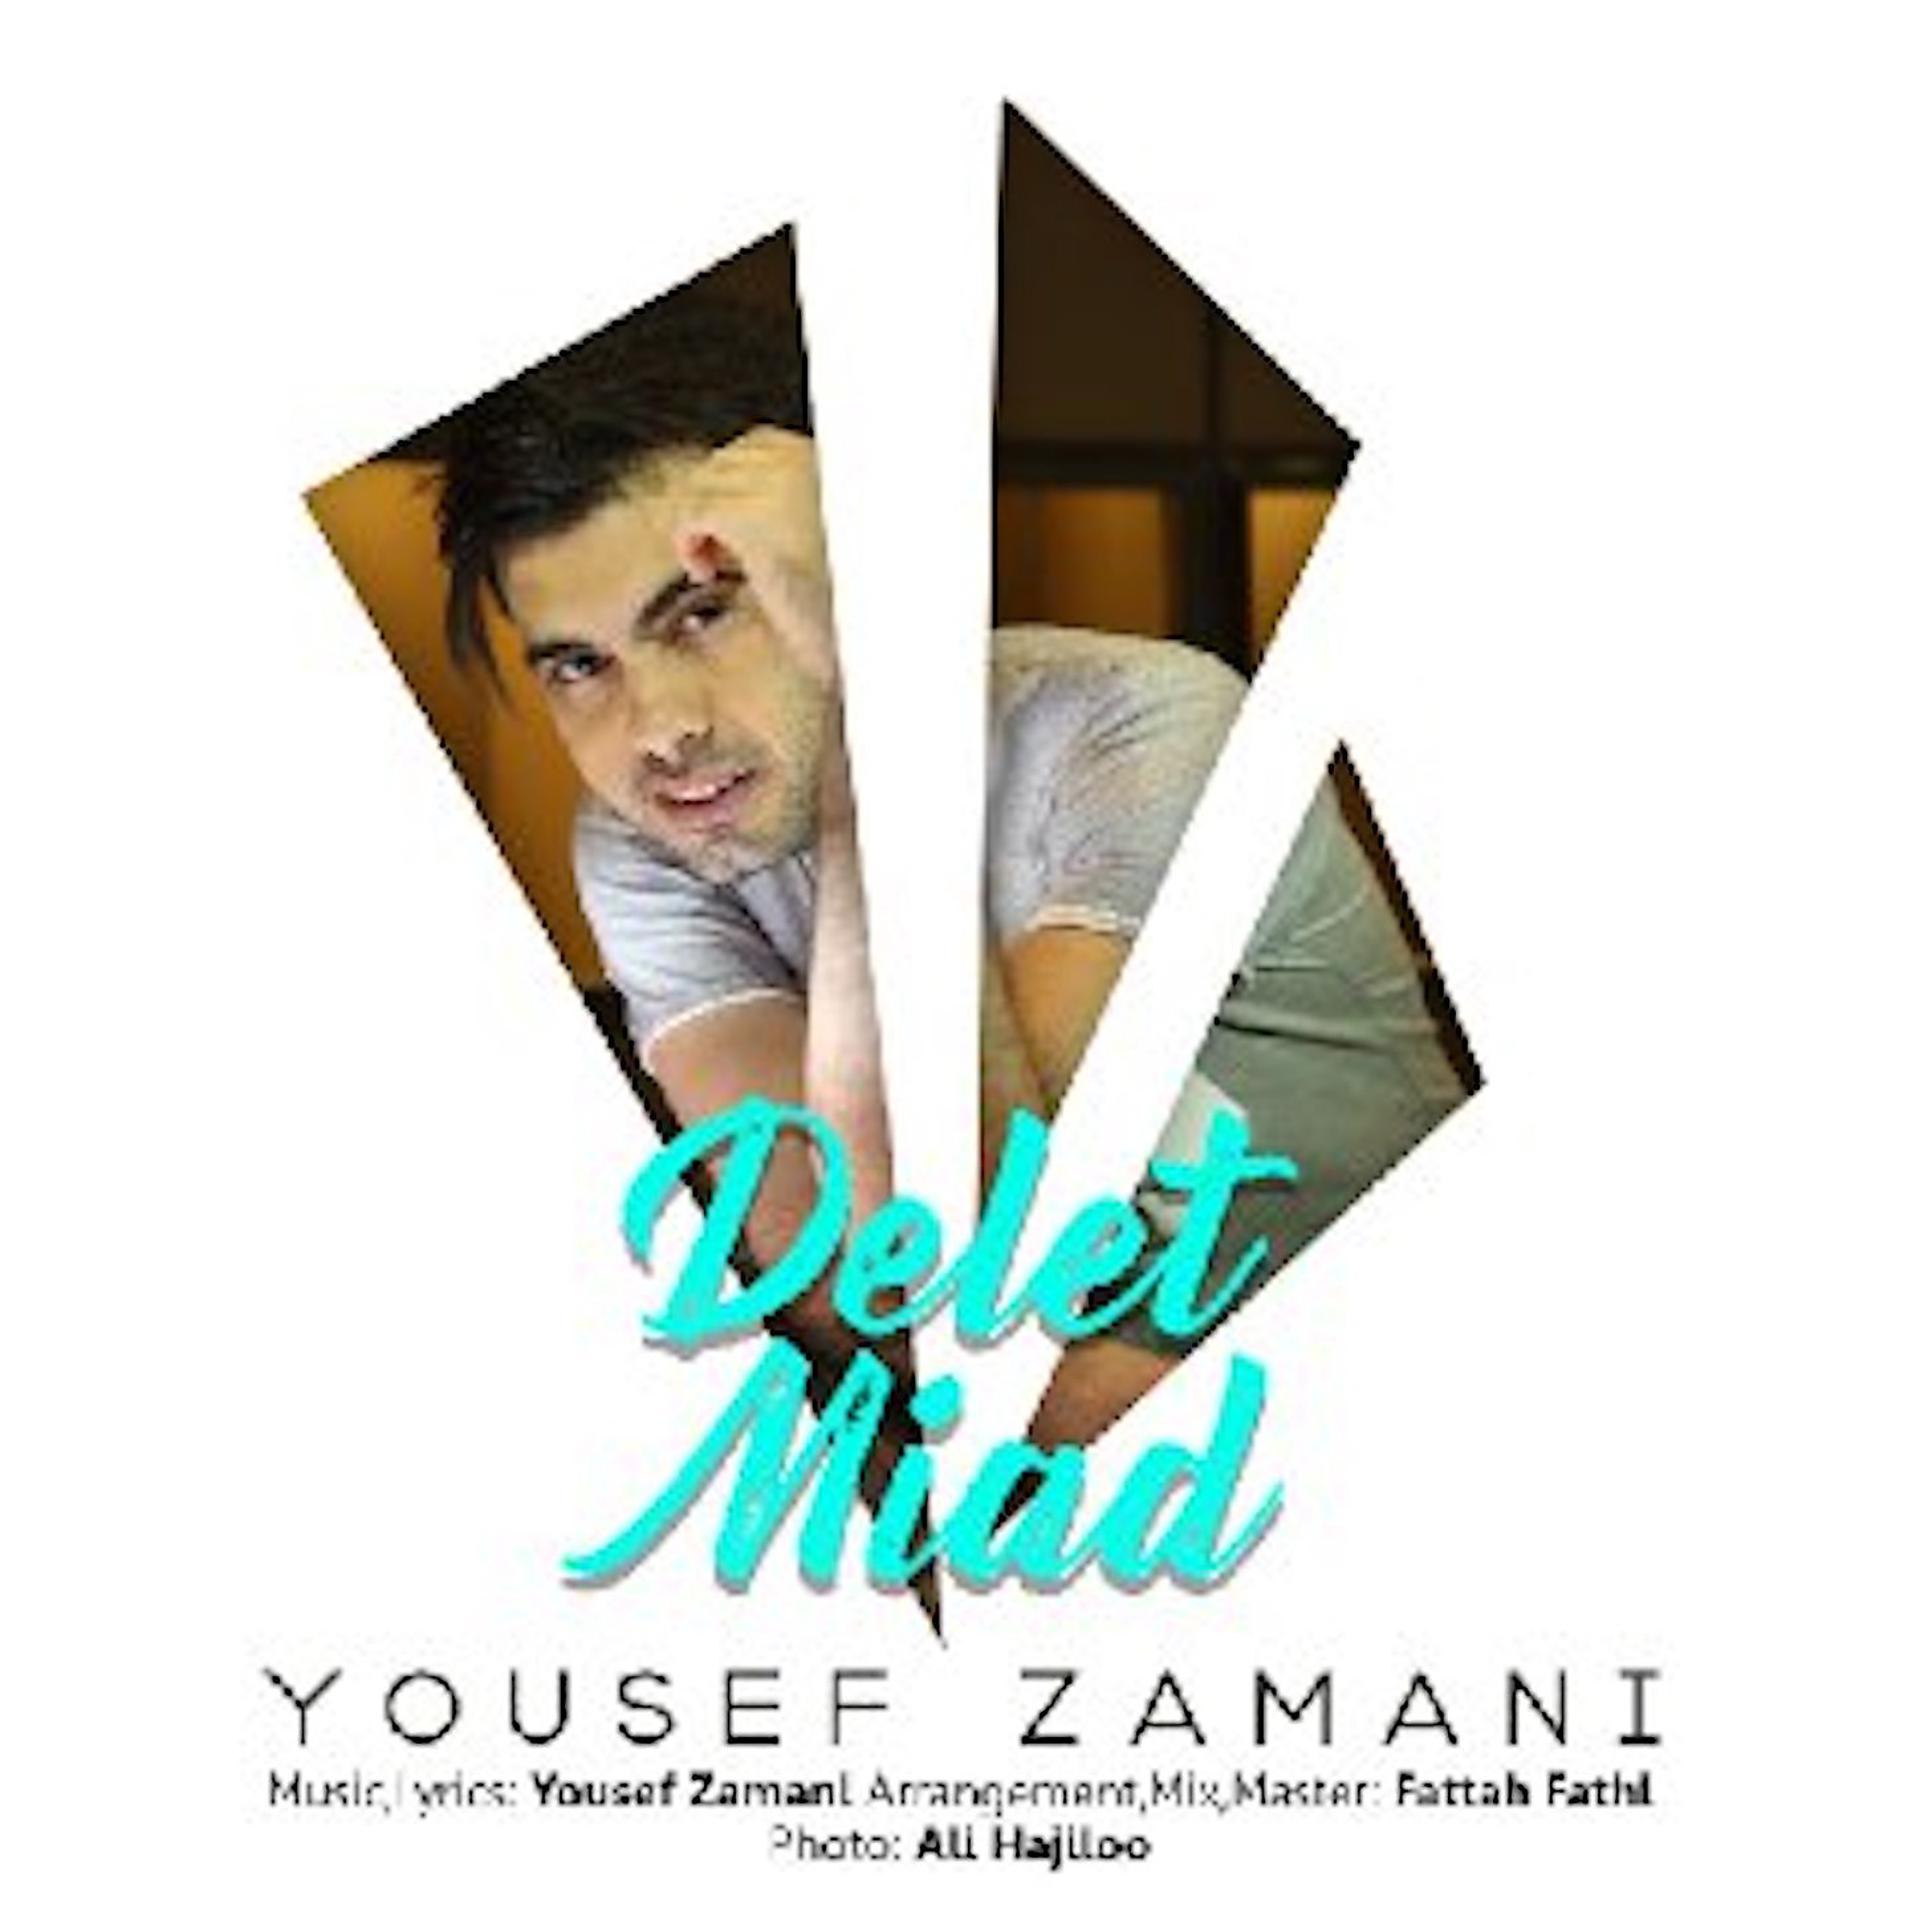 Постер к треку Yousef Zamani - Delet Miad